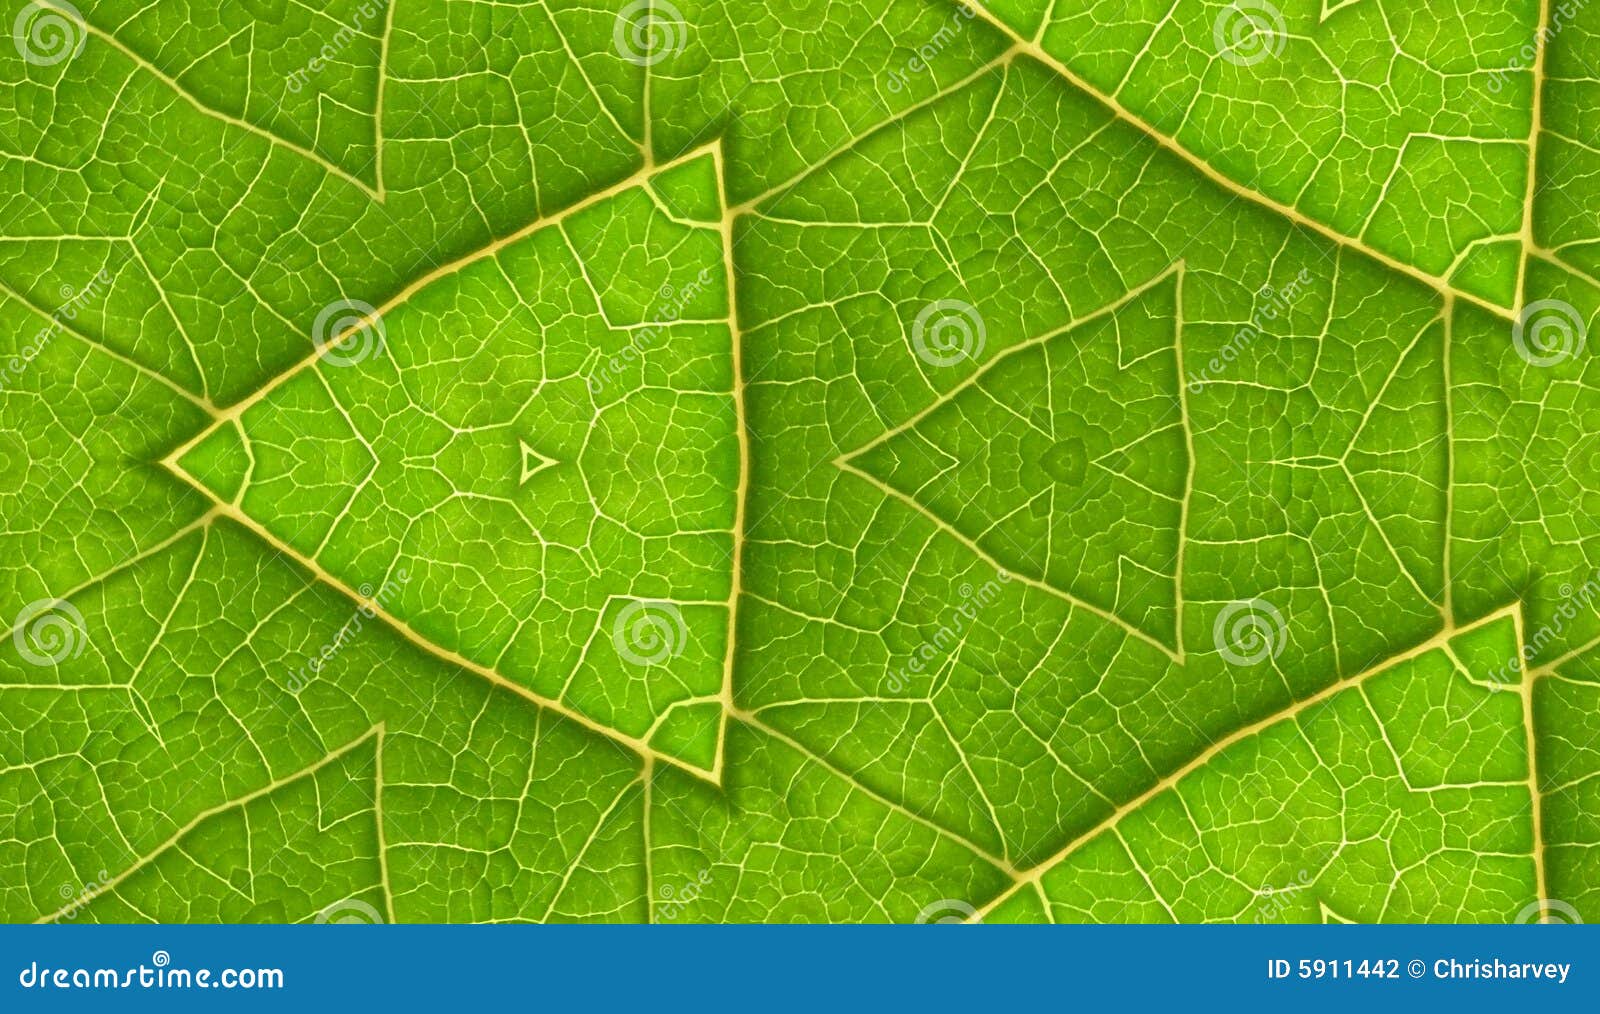 underside of green leaf seamless tile background